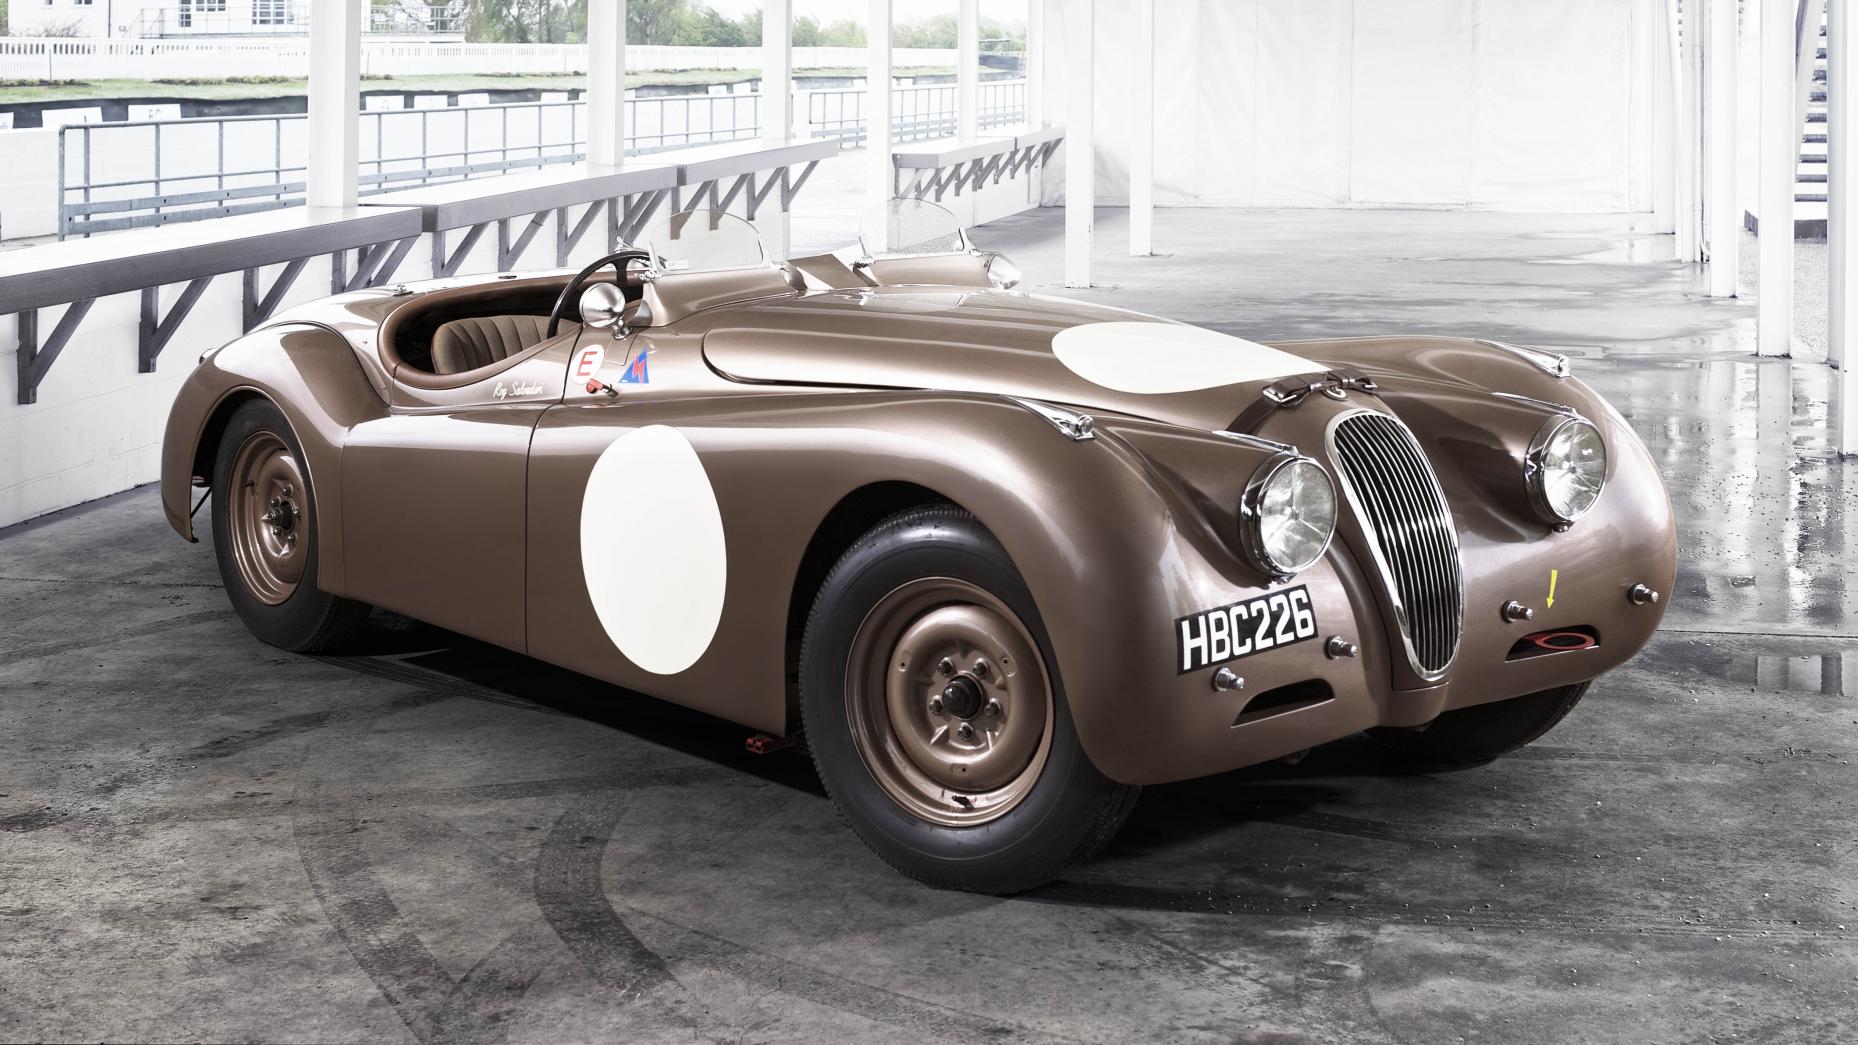 سریعترین خودروهای ادوار تاریخ پس از جنگ جهانی اول